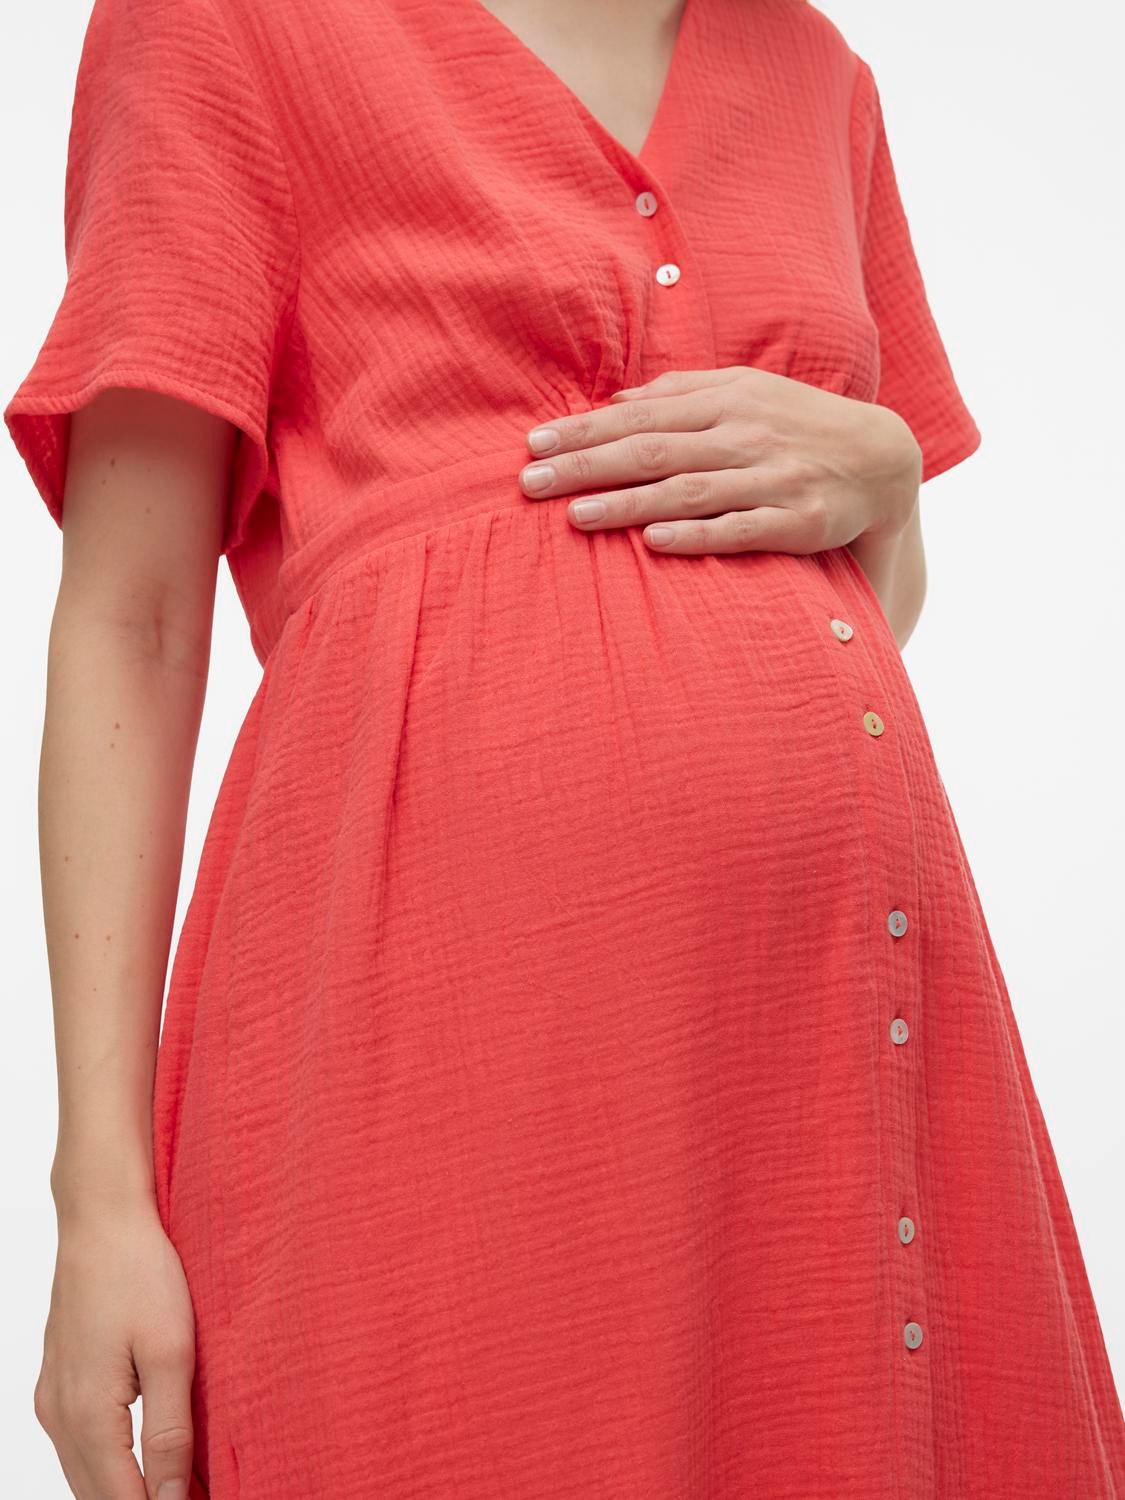 MAMA.LICIOUS Maternity-dress -Cayenne - 20020550